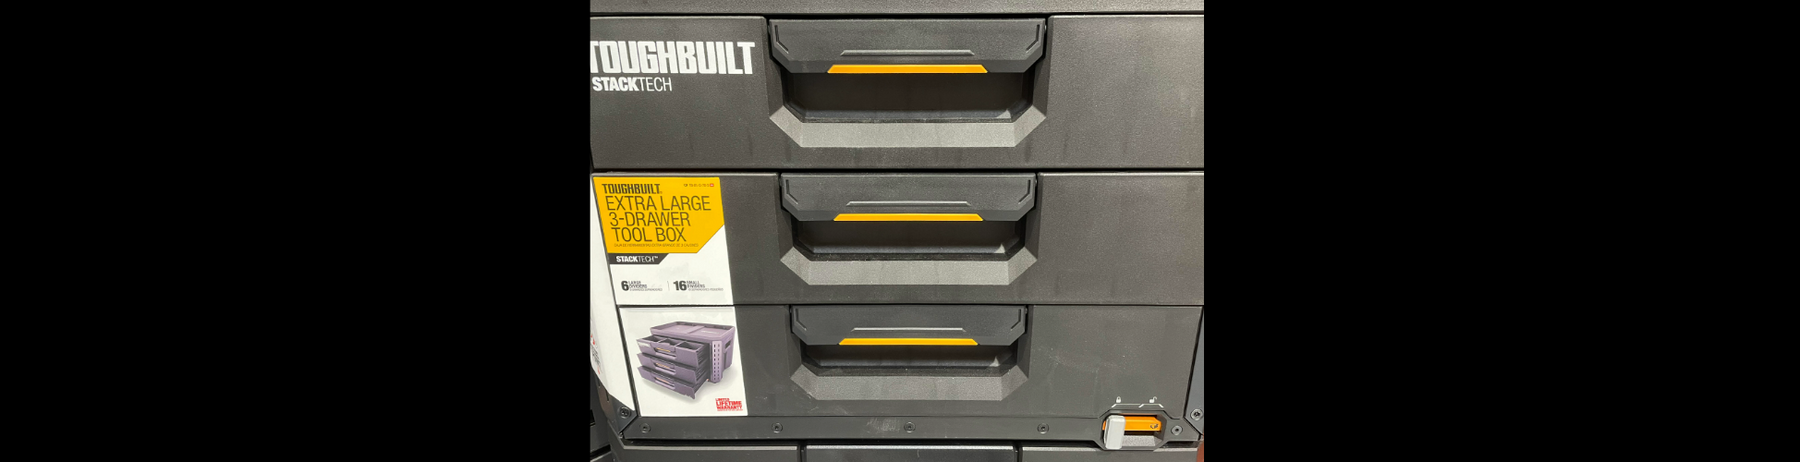 Toughbuilt StackTech XL 3 drawer tool box